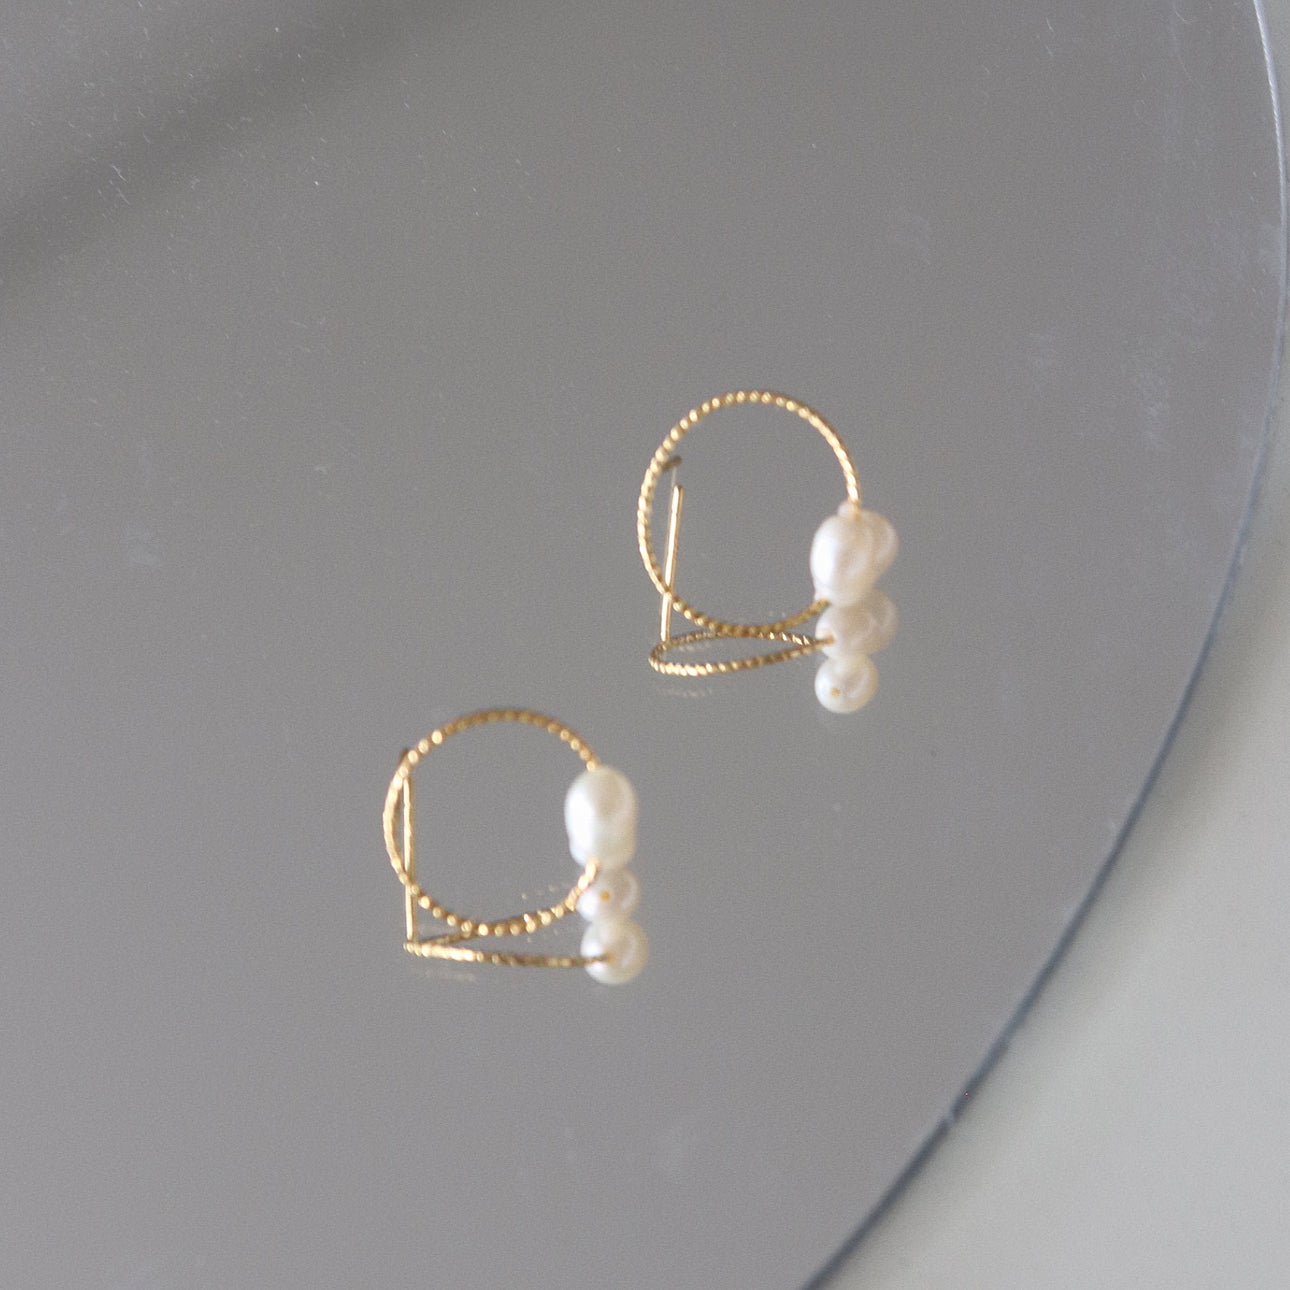 Mila earrings